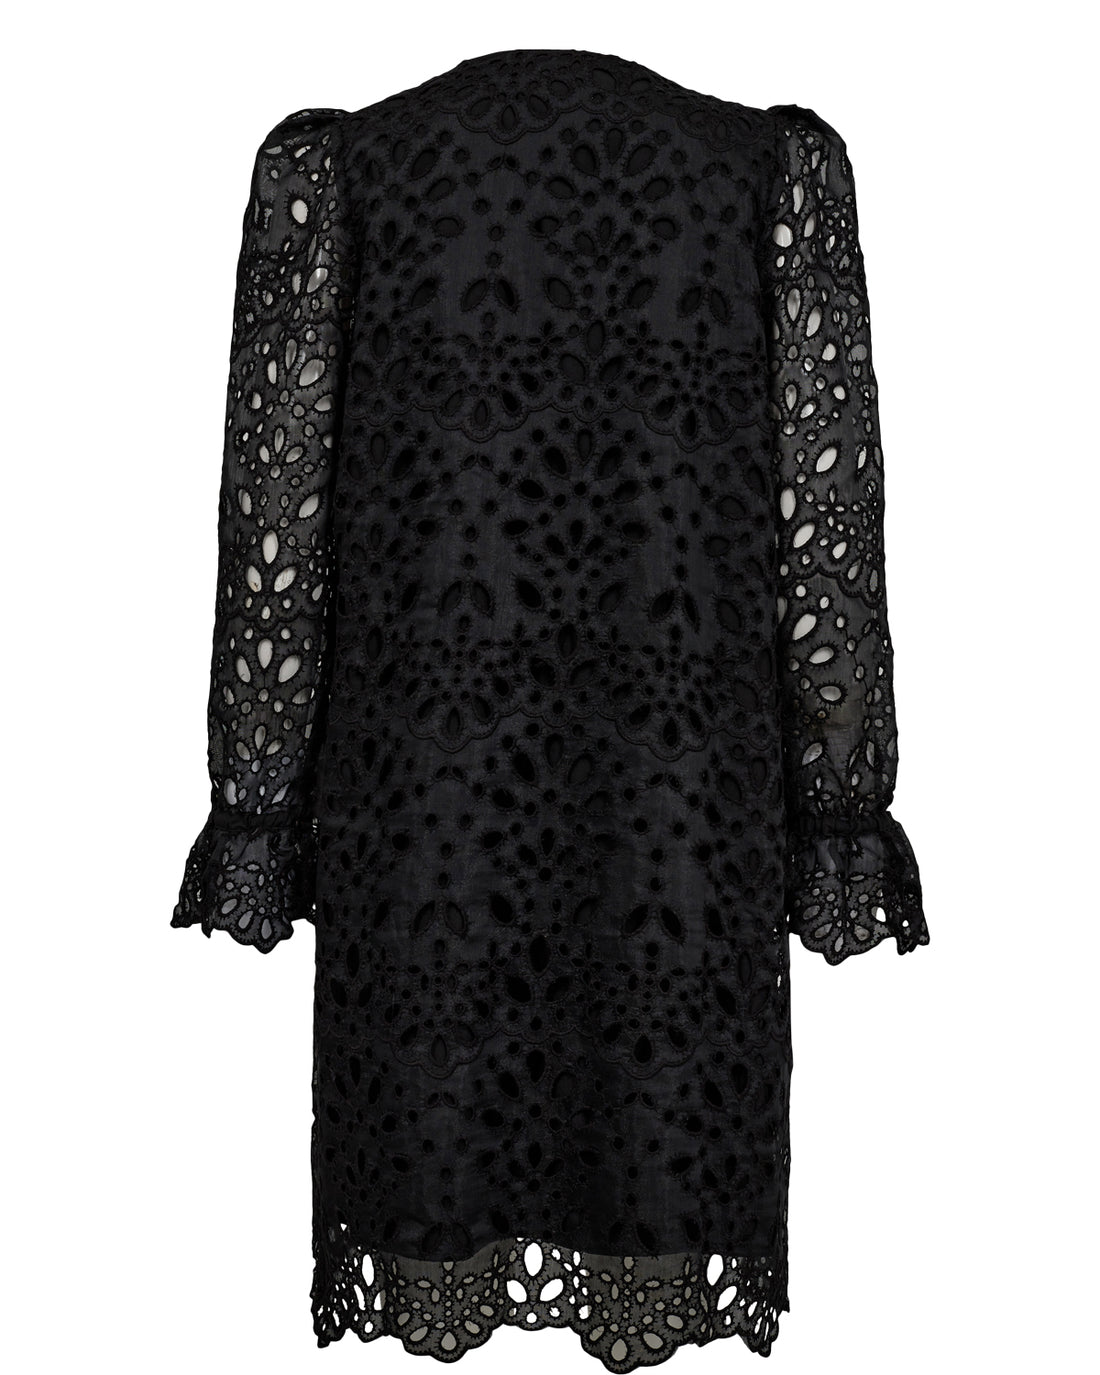 Nümph Nueliza Dress in Caviar Black